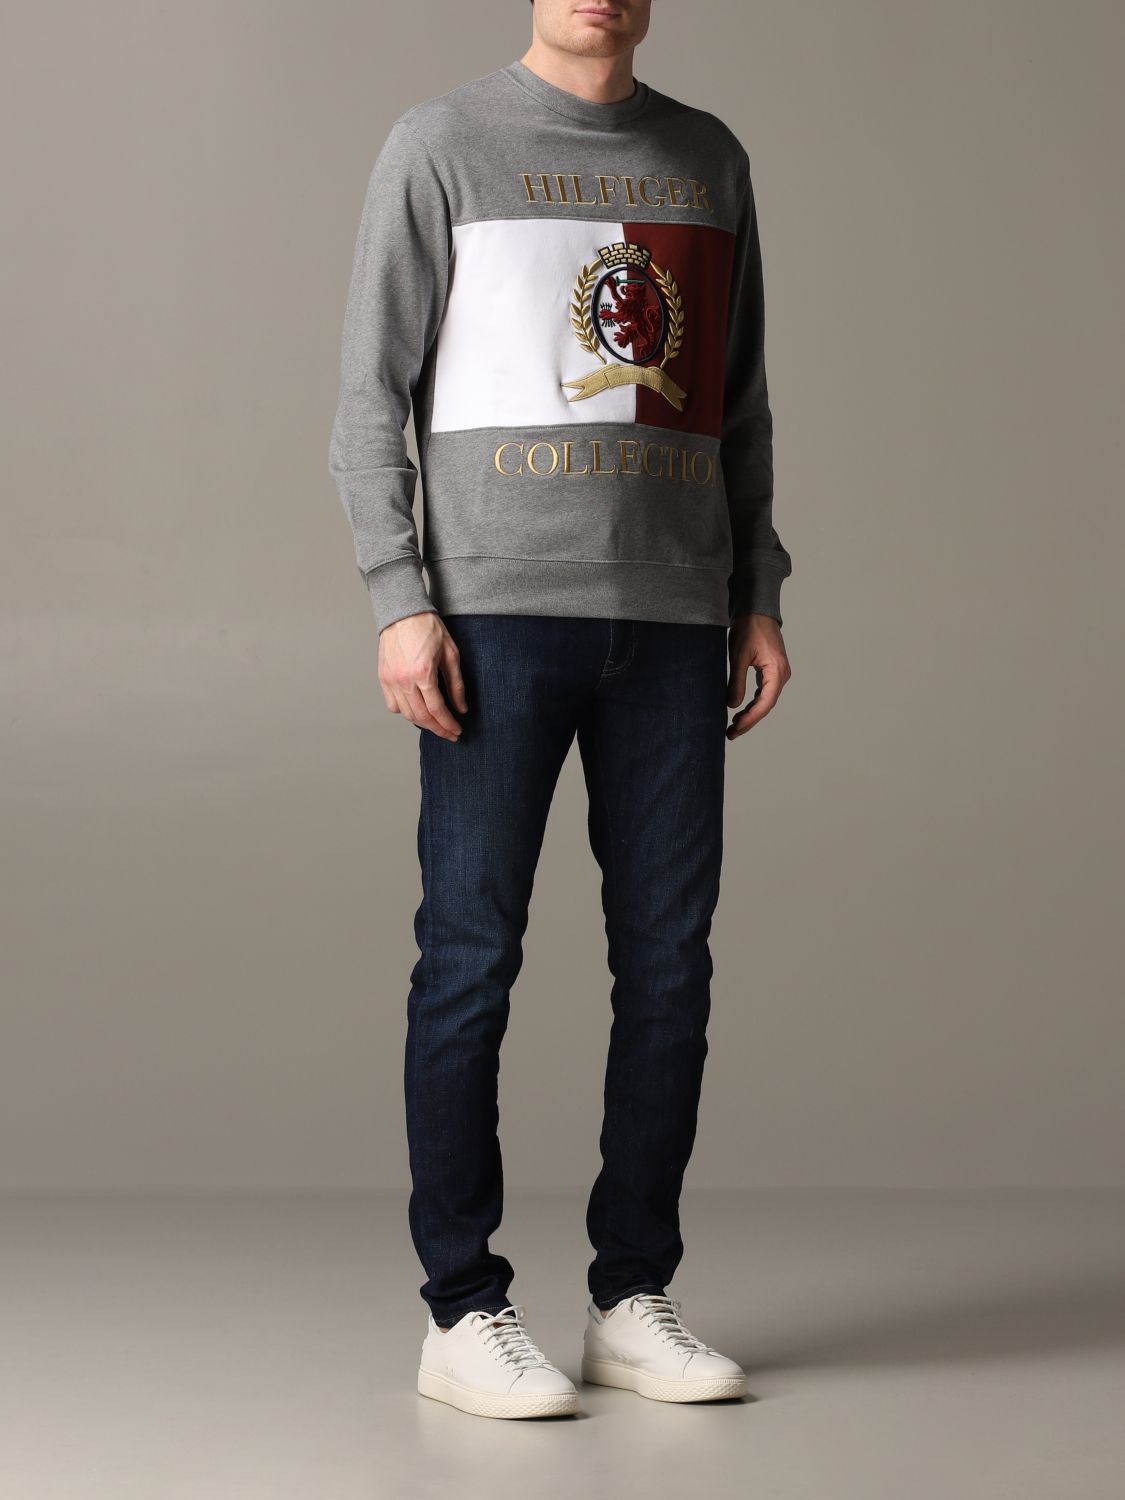 Sweatshirt men Tommy Hilfiger | Sweatshirt Hilfiger Collection Men Grey ...